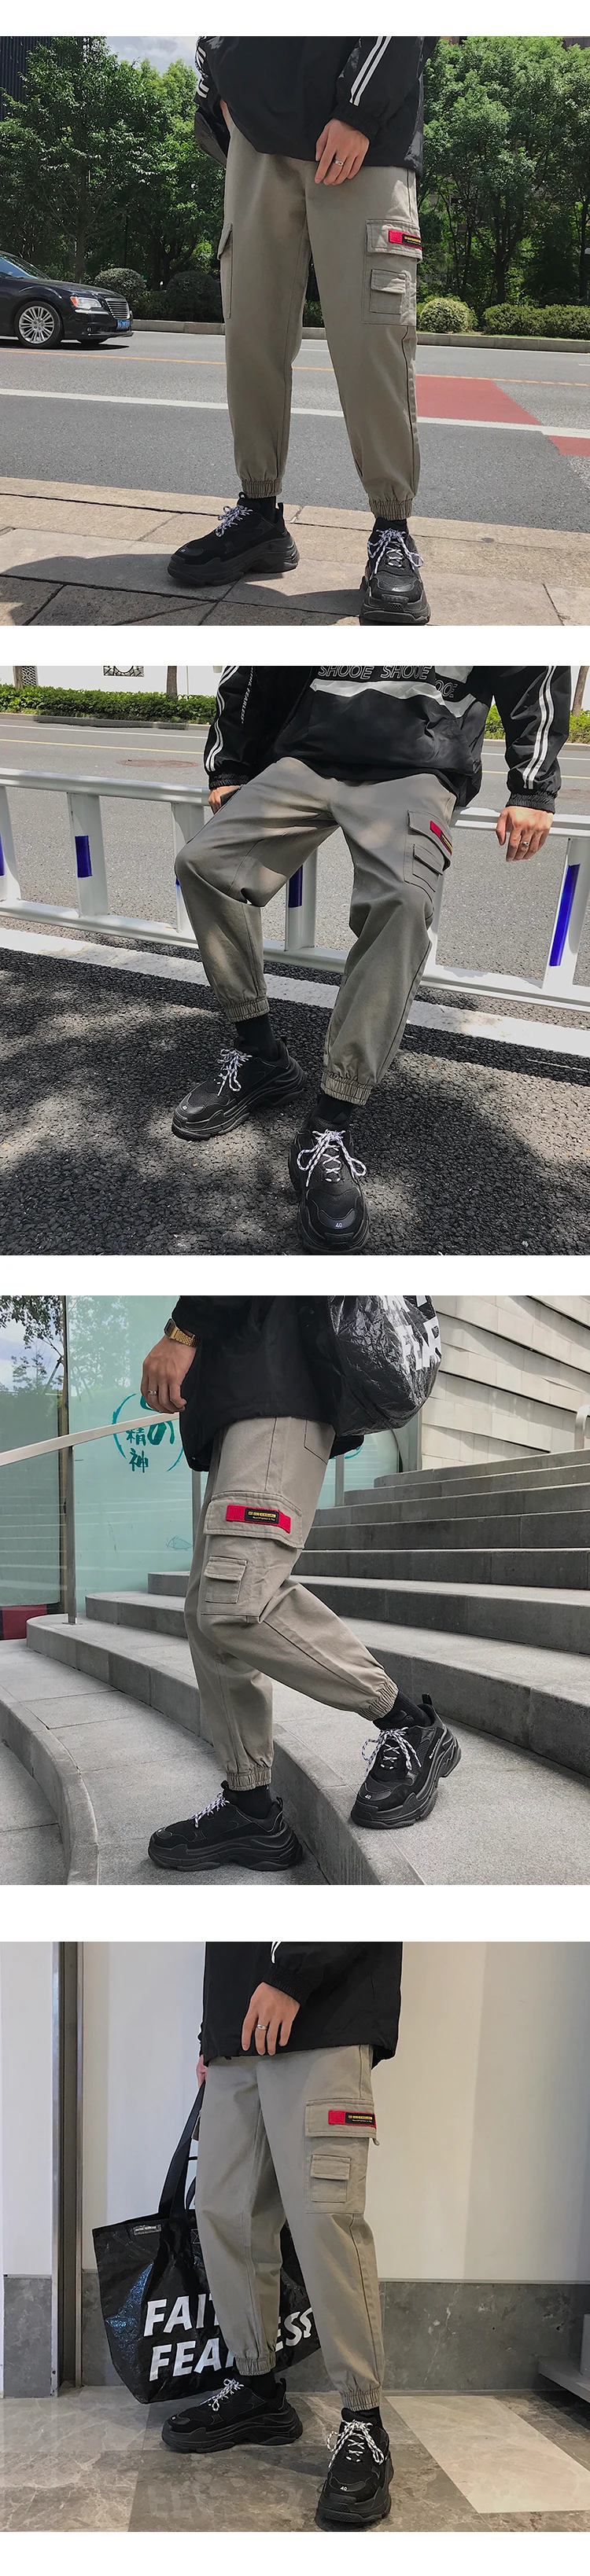 2019 Весна Safari Стиль комбинезоны много карман брюки карго Повседневное Для мужчин для отдыха уличная Штаны хлопок пот Штаны M-2XL